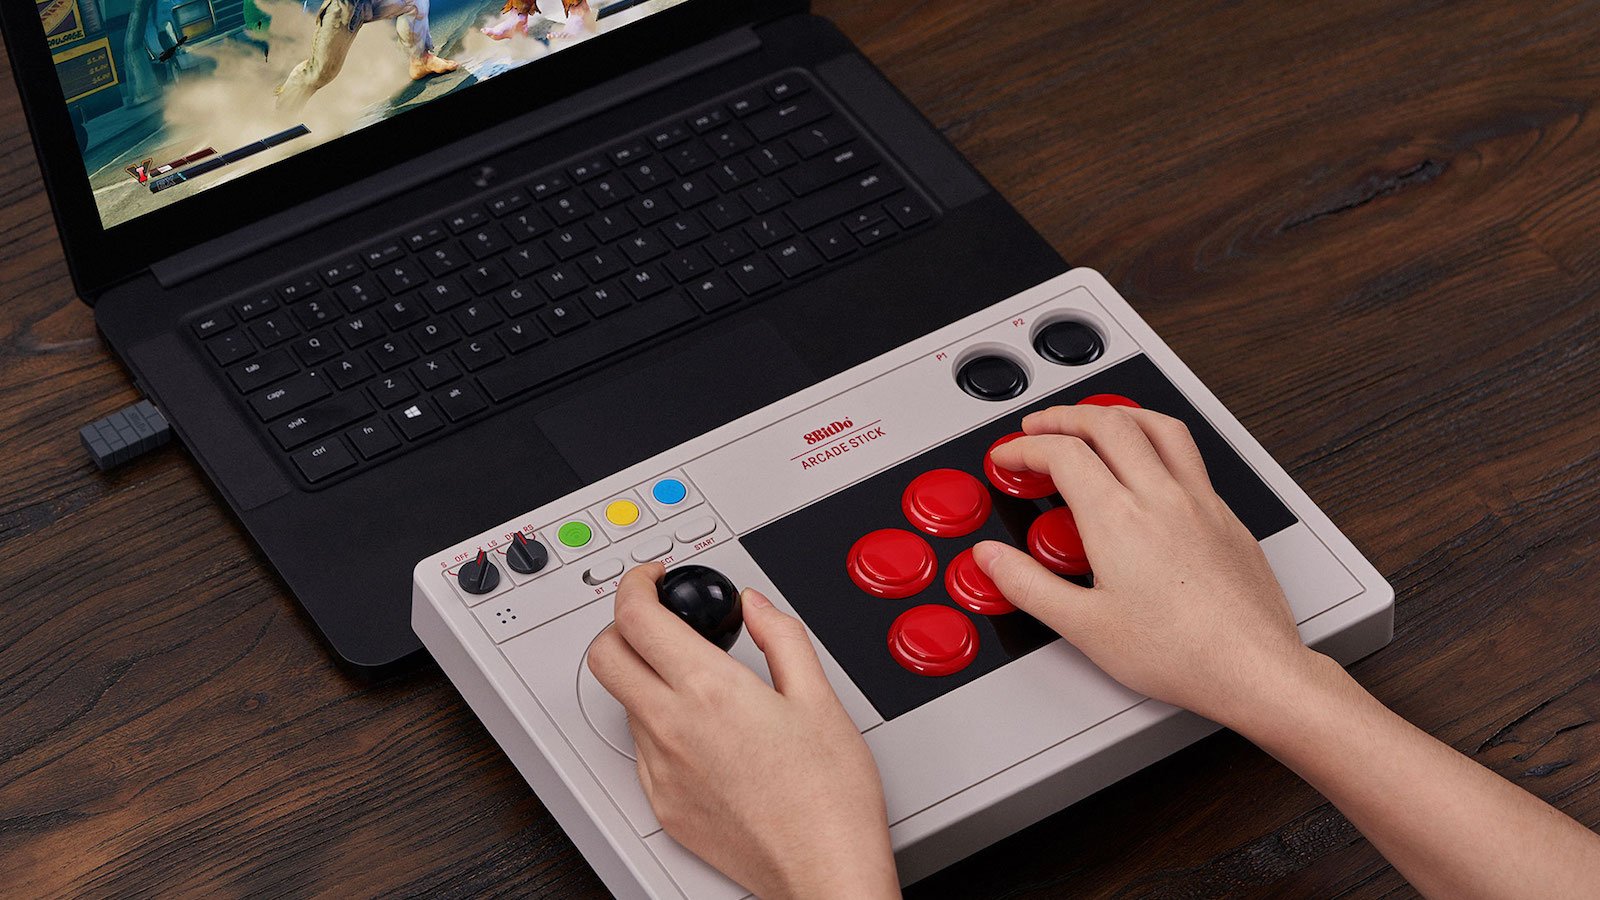 8BitDo Arcade Stick joystick modernizes a retro gaming style